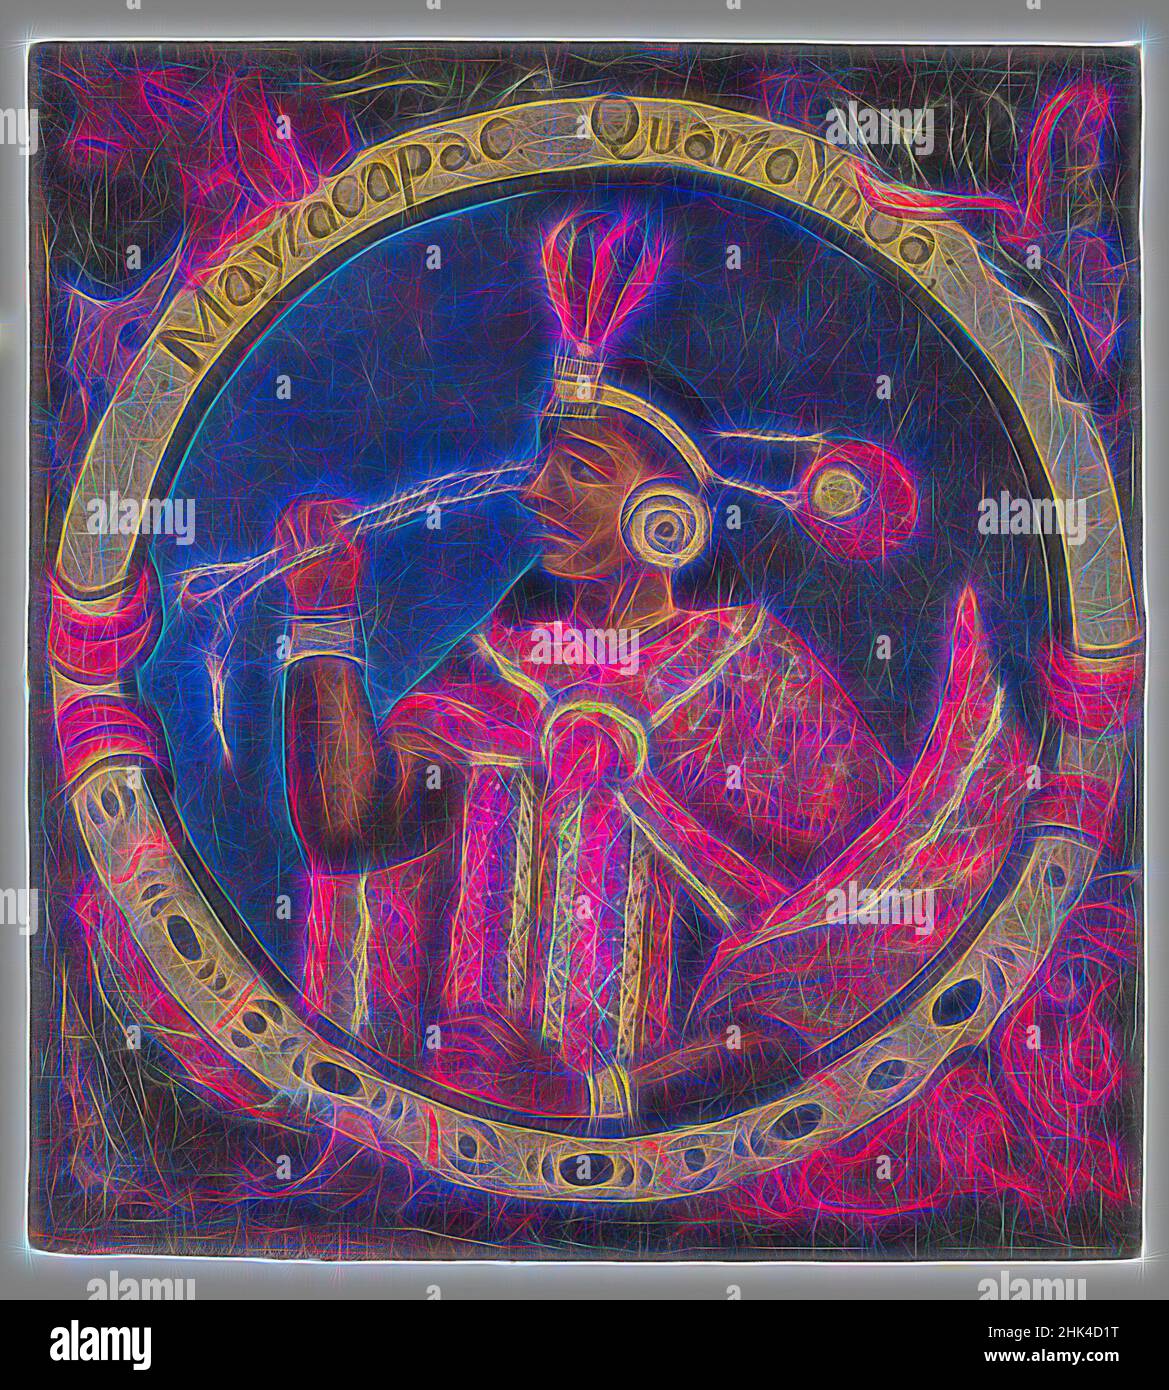 Inspiriert von Mayta Capac, Vierter Inka, 1 von 14 Porträts der Inka-Könige, Peruanisch, Öl auf Leinwand, Peru, Mitte 18th Jahrhundert, Wahrscheinlich, Kolonialzeit, 23 1/2 x 21 1/2in., 59,7 x 54,6cm, 18th Jahrhundert, Armbänder, Eroberung, ohrring, Ohrspulen, Feder, Federn, Kopfschmuck, hispanische Herkunft, historisch, inka, neu erfunden von Artotop. Klassische Kunst neu erfunden mit einem modernen Twist. Design von warmen fröhlichen Leuchten der Helligkeit und Lichtstrahl Strahlkraft. Fotografie inspiriert von Surrealismus und Futurismus, umarmt dynamische Energie der modernen Technologie, Bewegung, Geschwindigkeit und Kultur zu revolutionieren Stockfoto